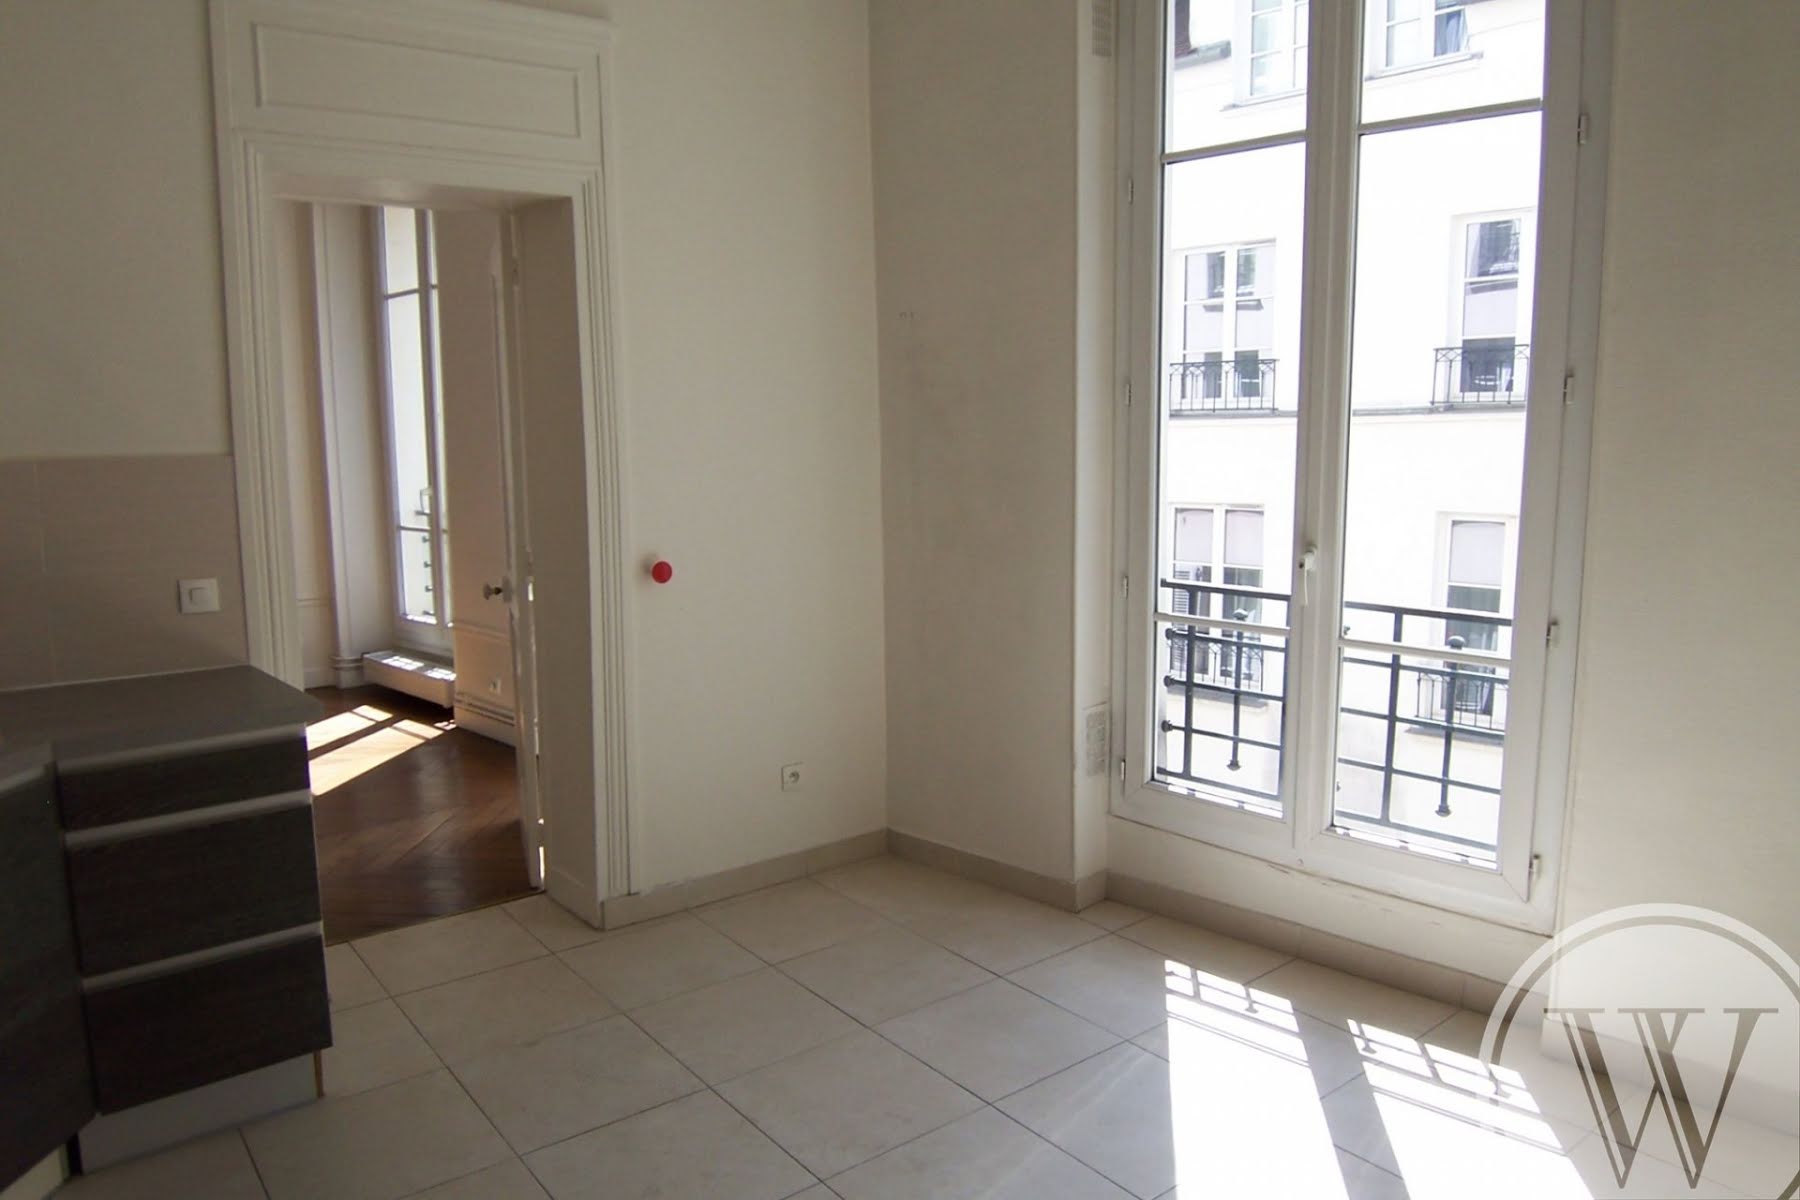 Location appartement 4 pièces 84,21 m2